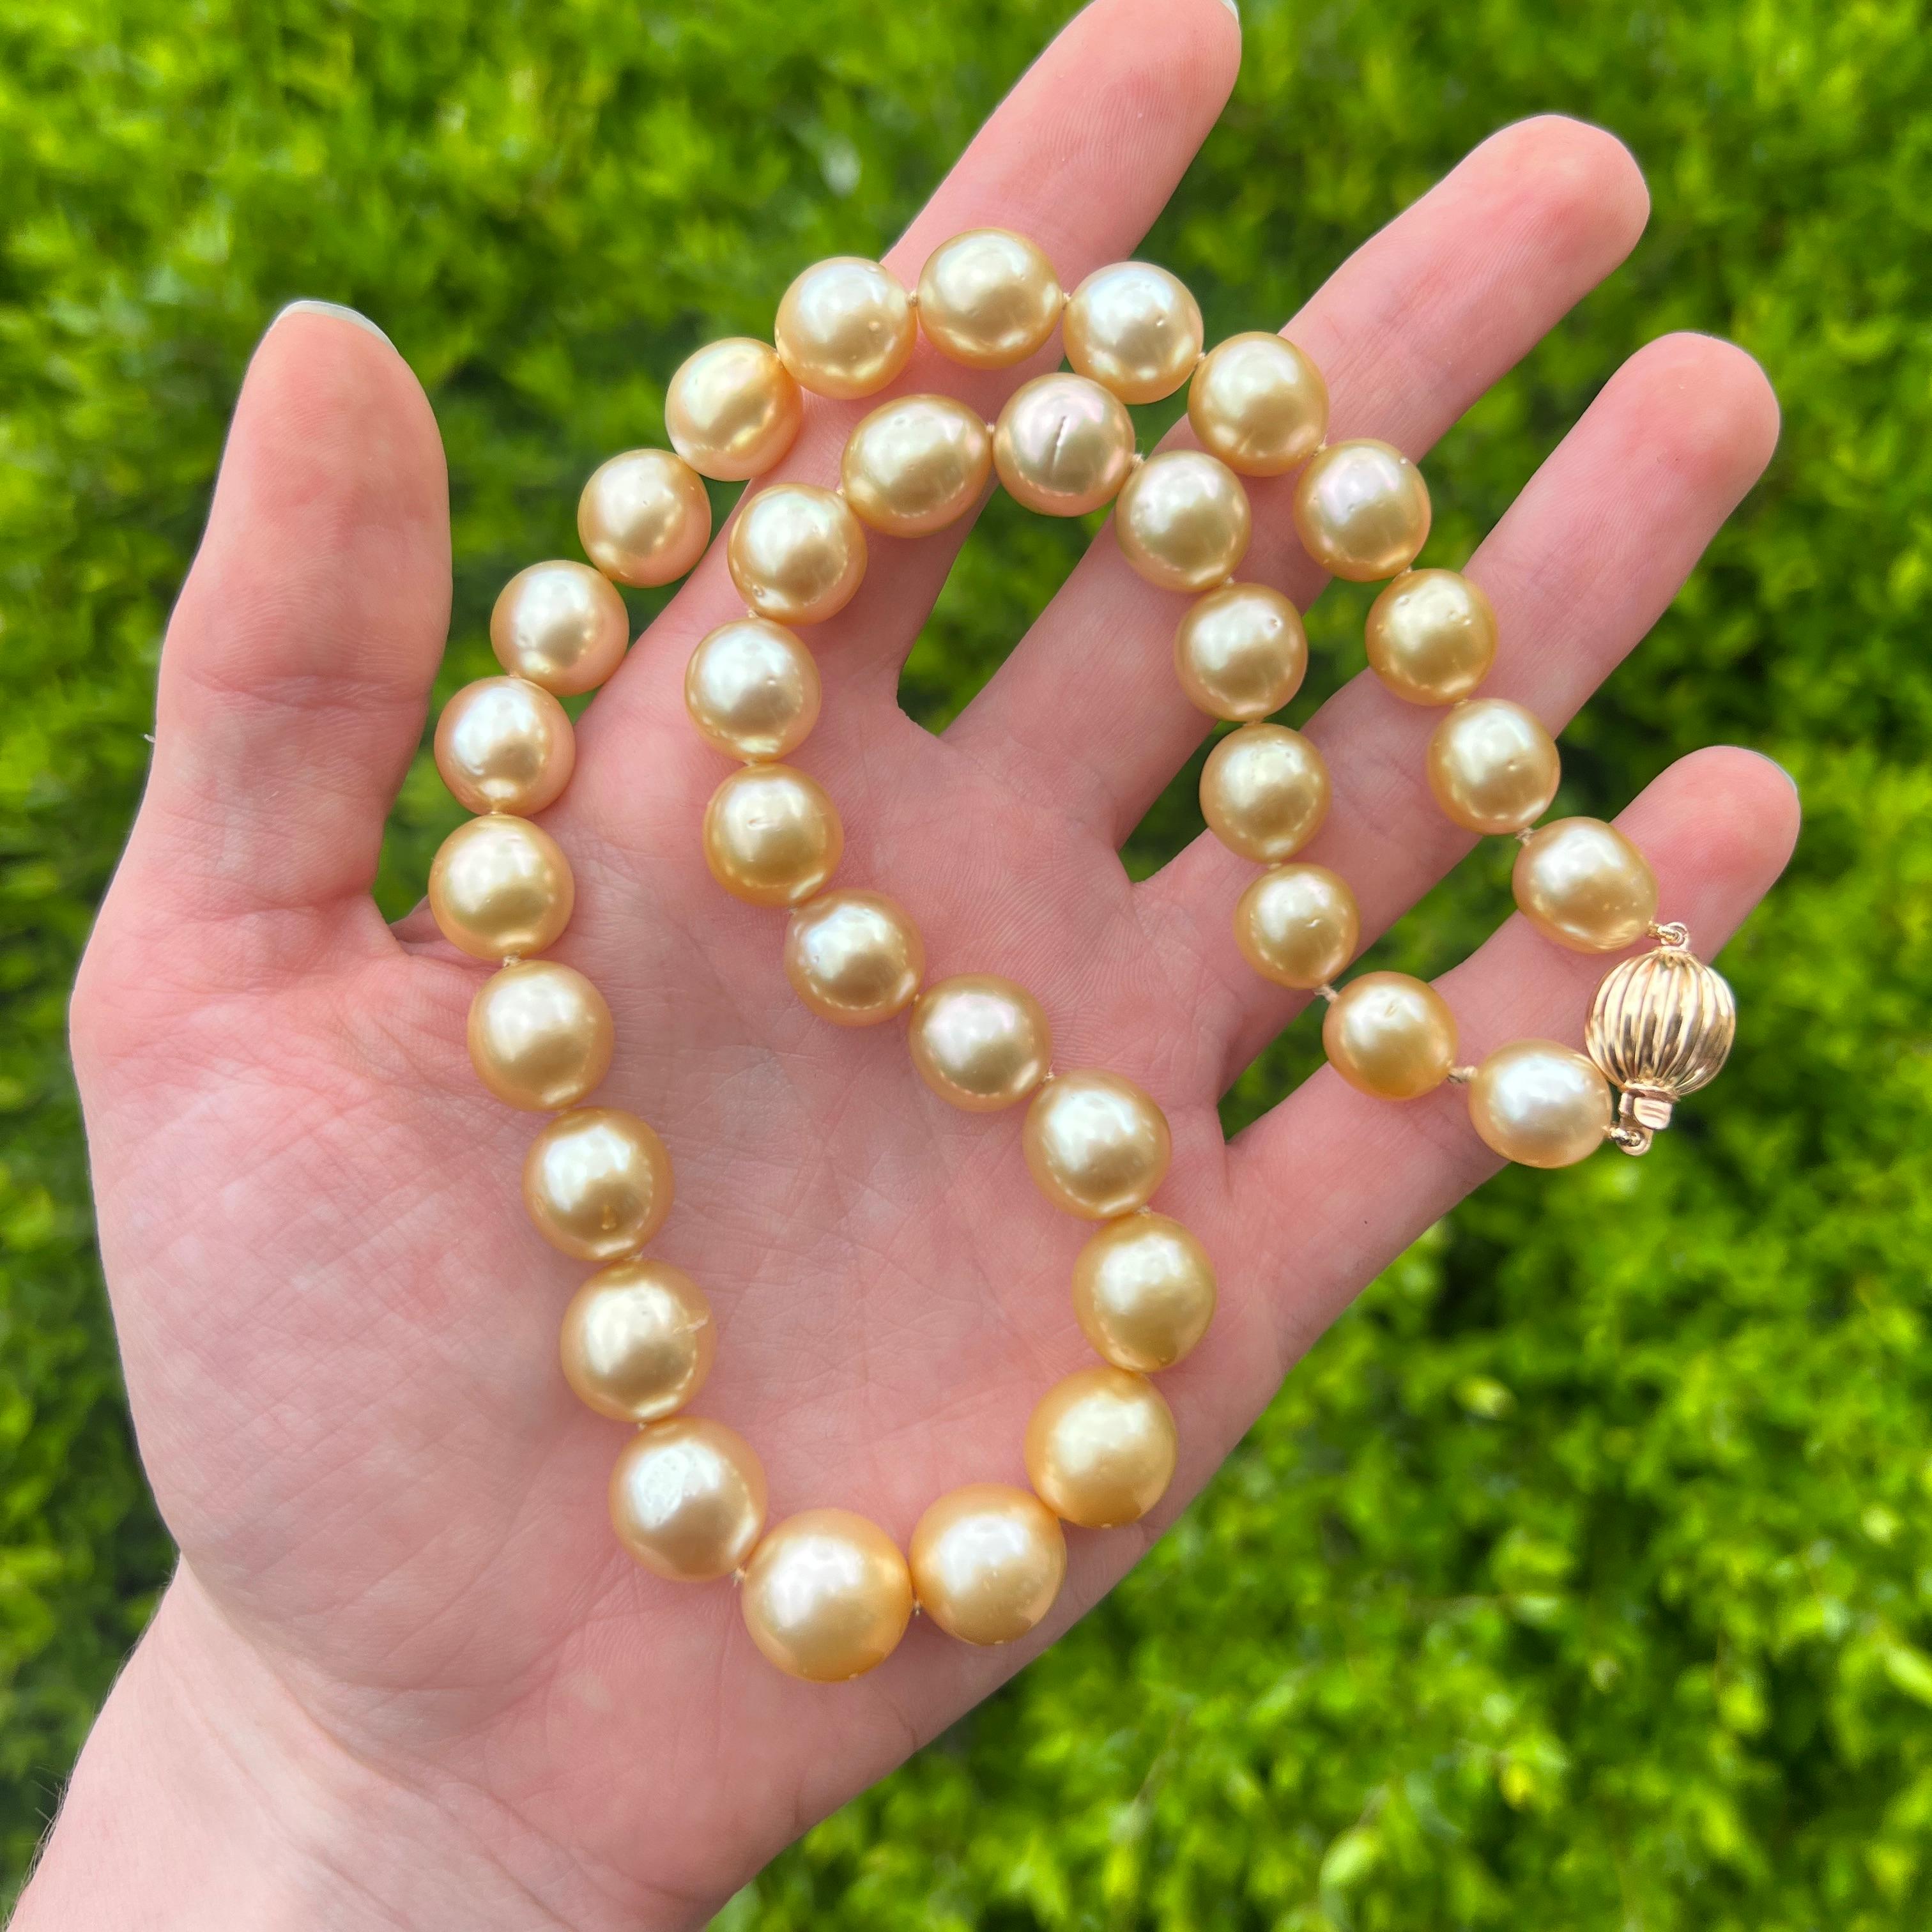 Uncut 14k Golden South Seas Pearl Necklace